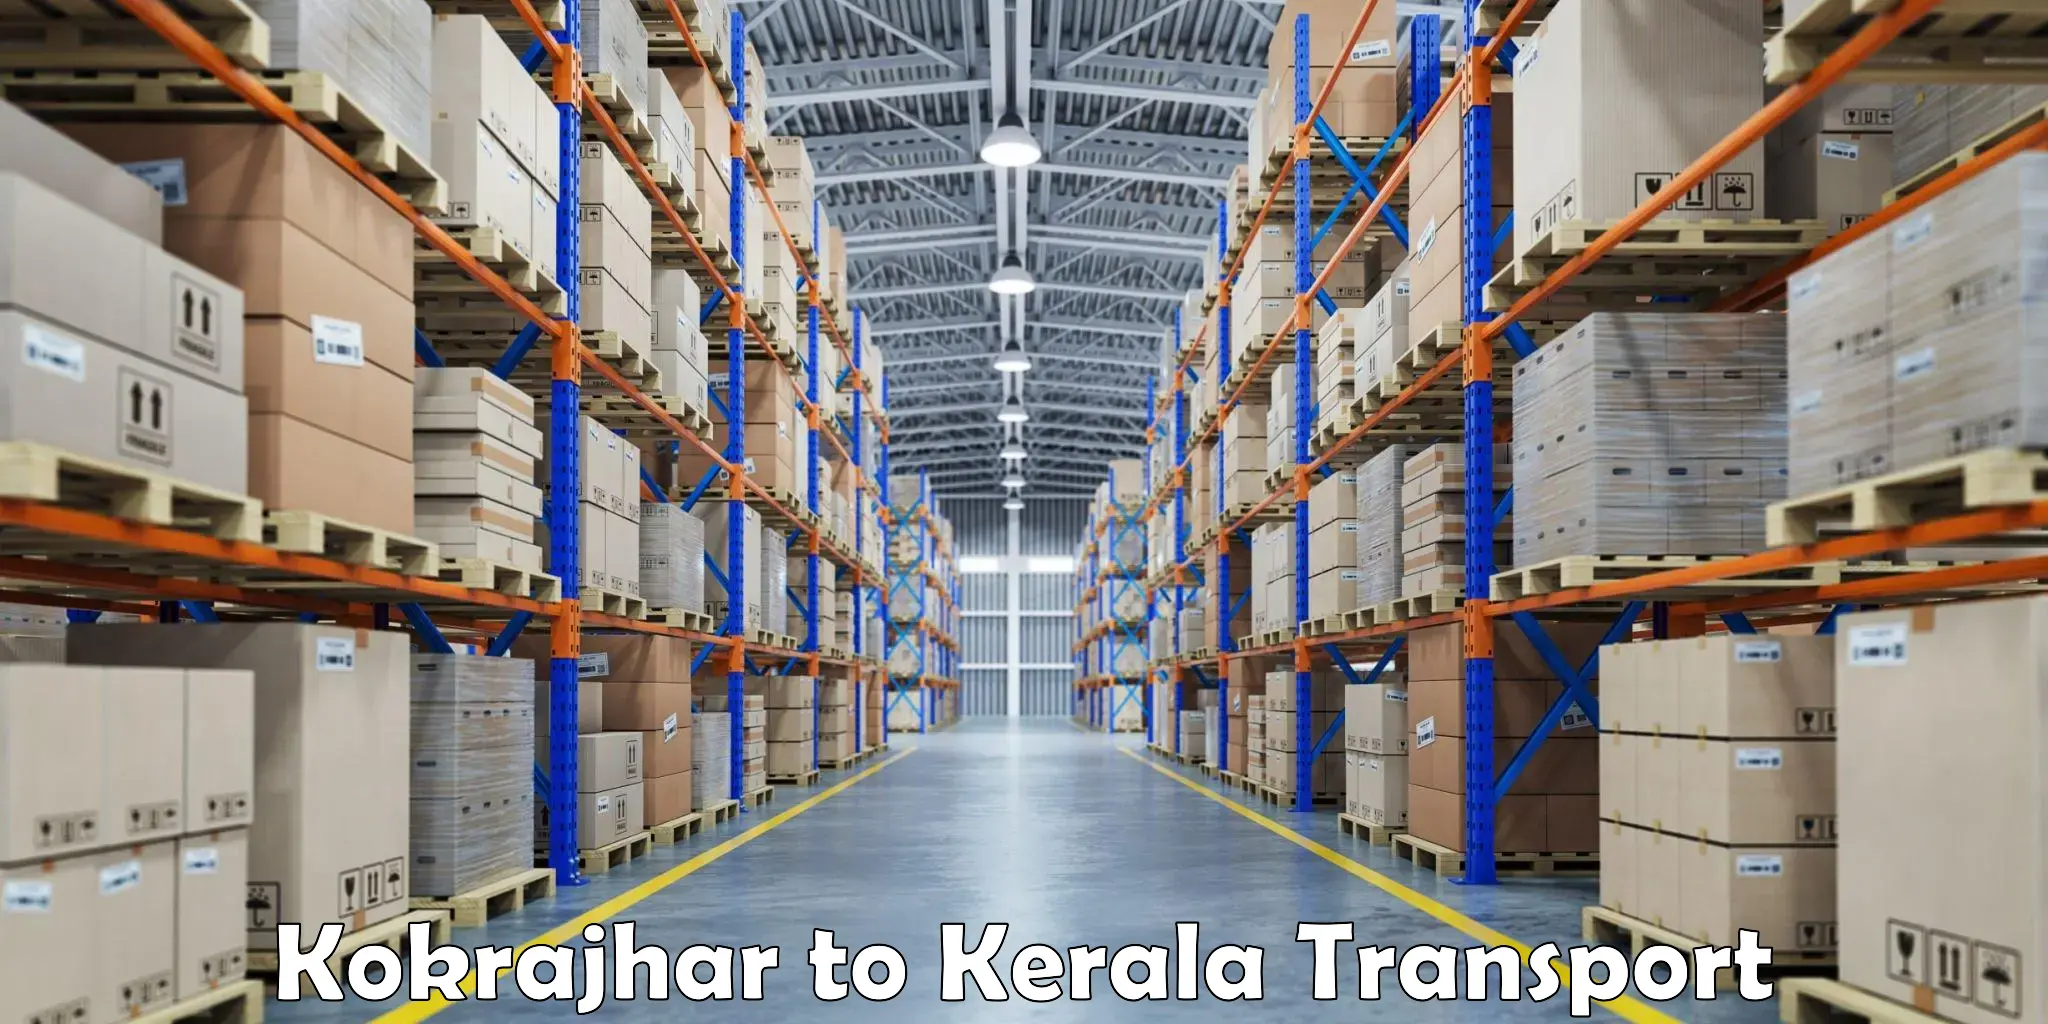 Shipping partner Kokrajhar to Nilambur